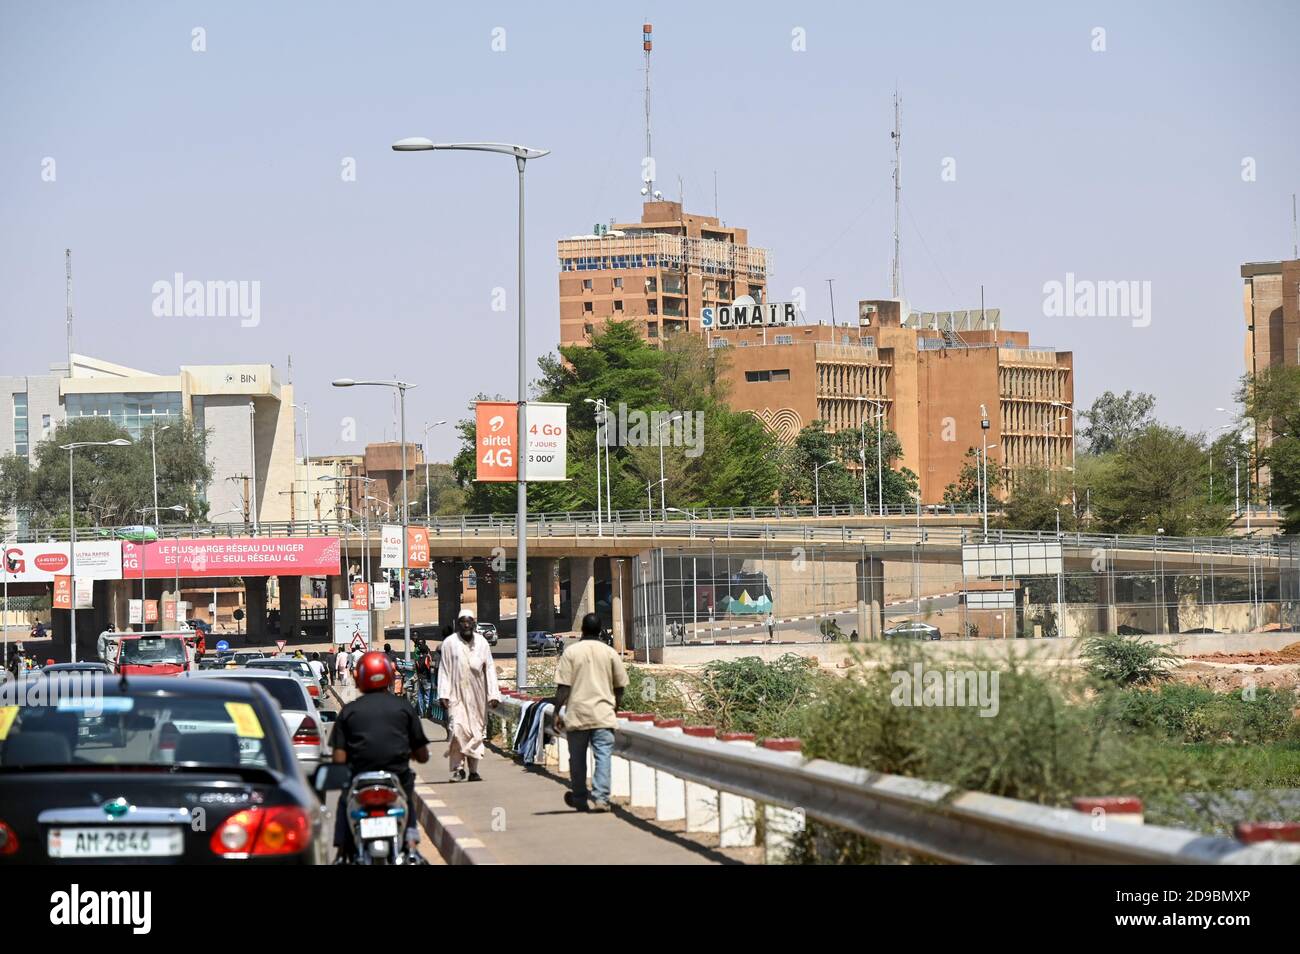 NIGER, Niamey, Somair, Société des Mines de l'Air, Hauptsitz des nationalen Bergbauunternehmens, das Uran in Arlit abbaut. Das französische Energieunternehmen Orano, früher Areva genannt, hat einen Anteil von 63,4 Prozent, andere Anteile gehören dem nigrischen Staat Stockfoto